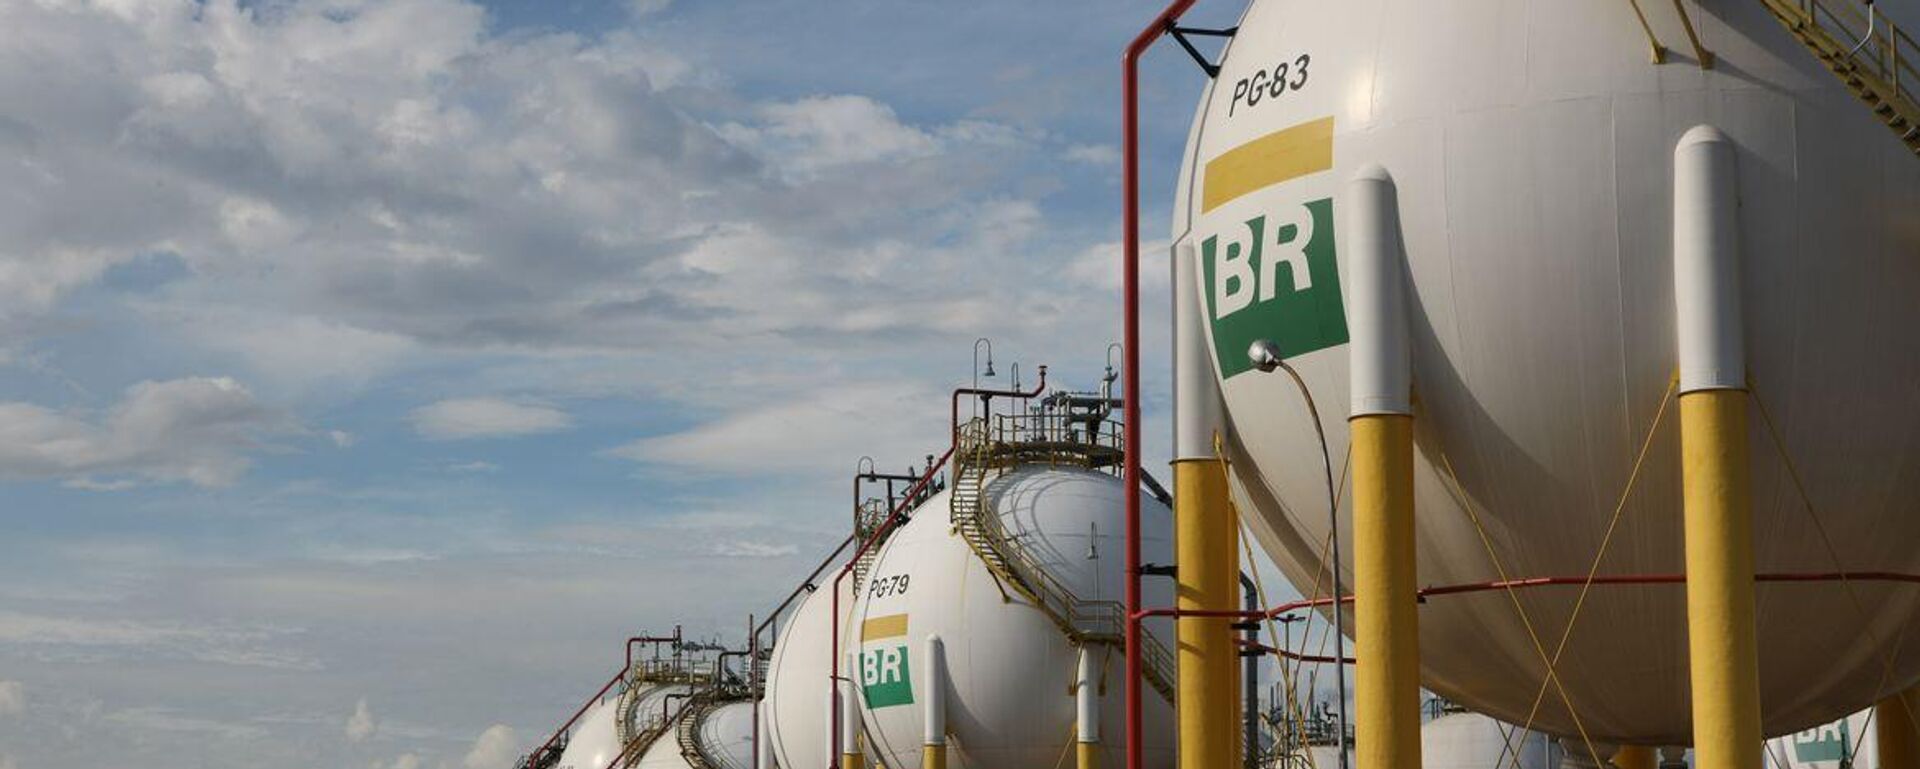 Esferas de armazenamento de gás liquefeito de petróleo (GLP) da Refinaria Duque de Caxias (Reduc), da Petrobras. Duque de Caxias (RJ), 20 de março de 2013 - Sputnik Brasil, 1920, 01.12.2023